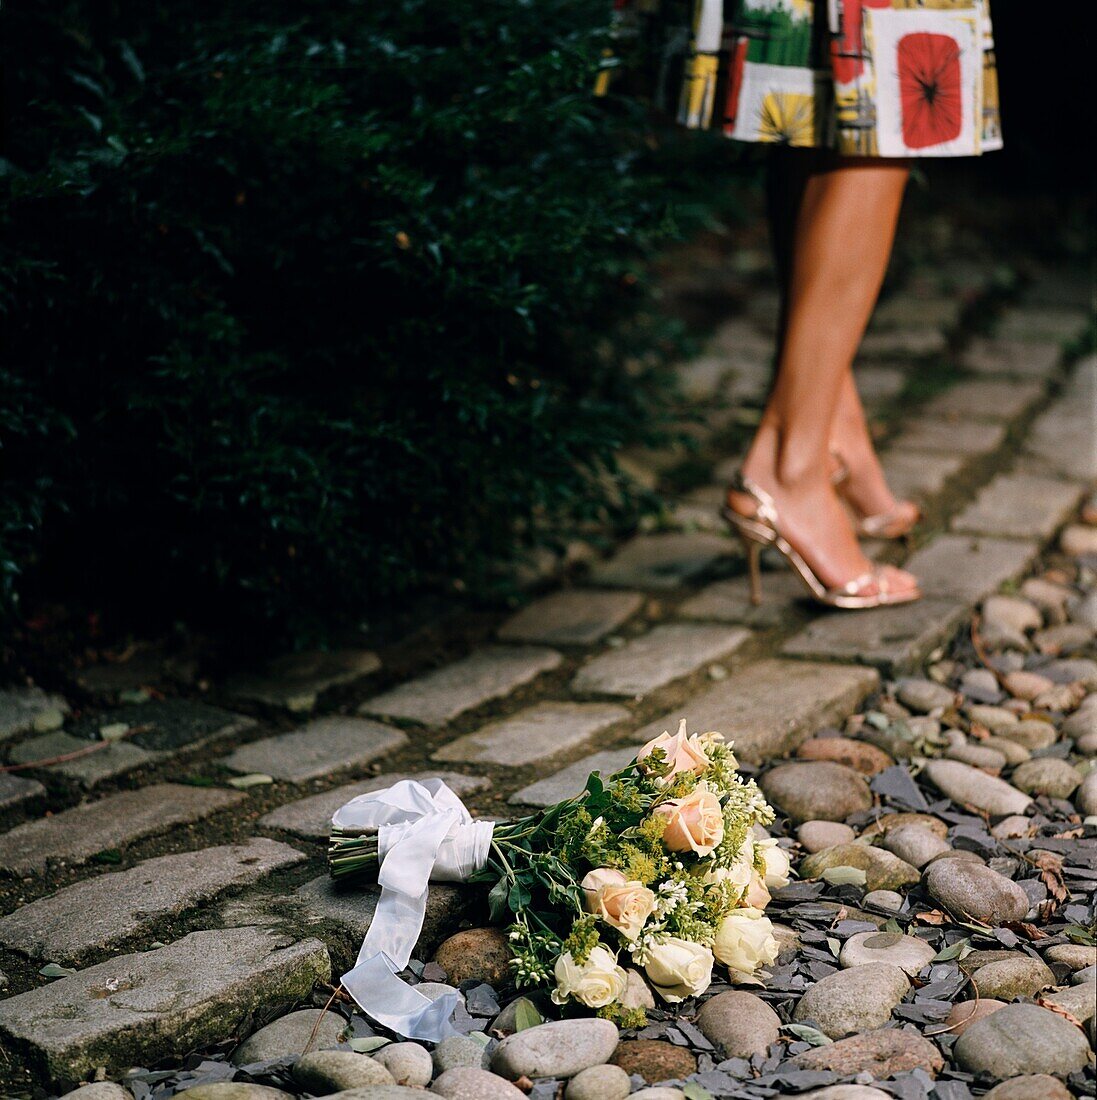 Frau geht von einem Blumenstrauß auf dem Boden weg